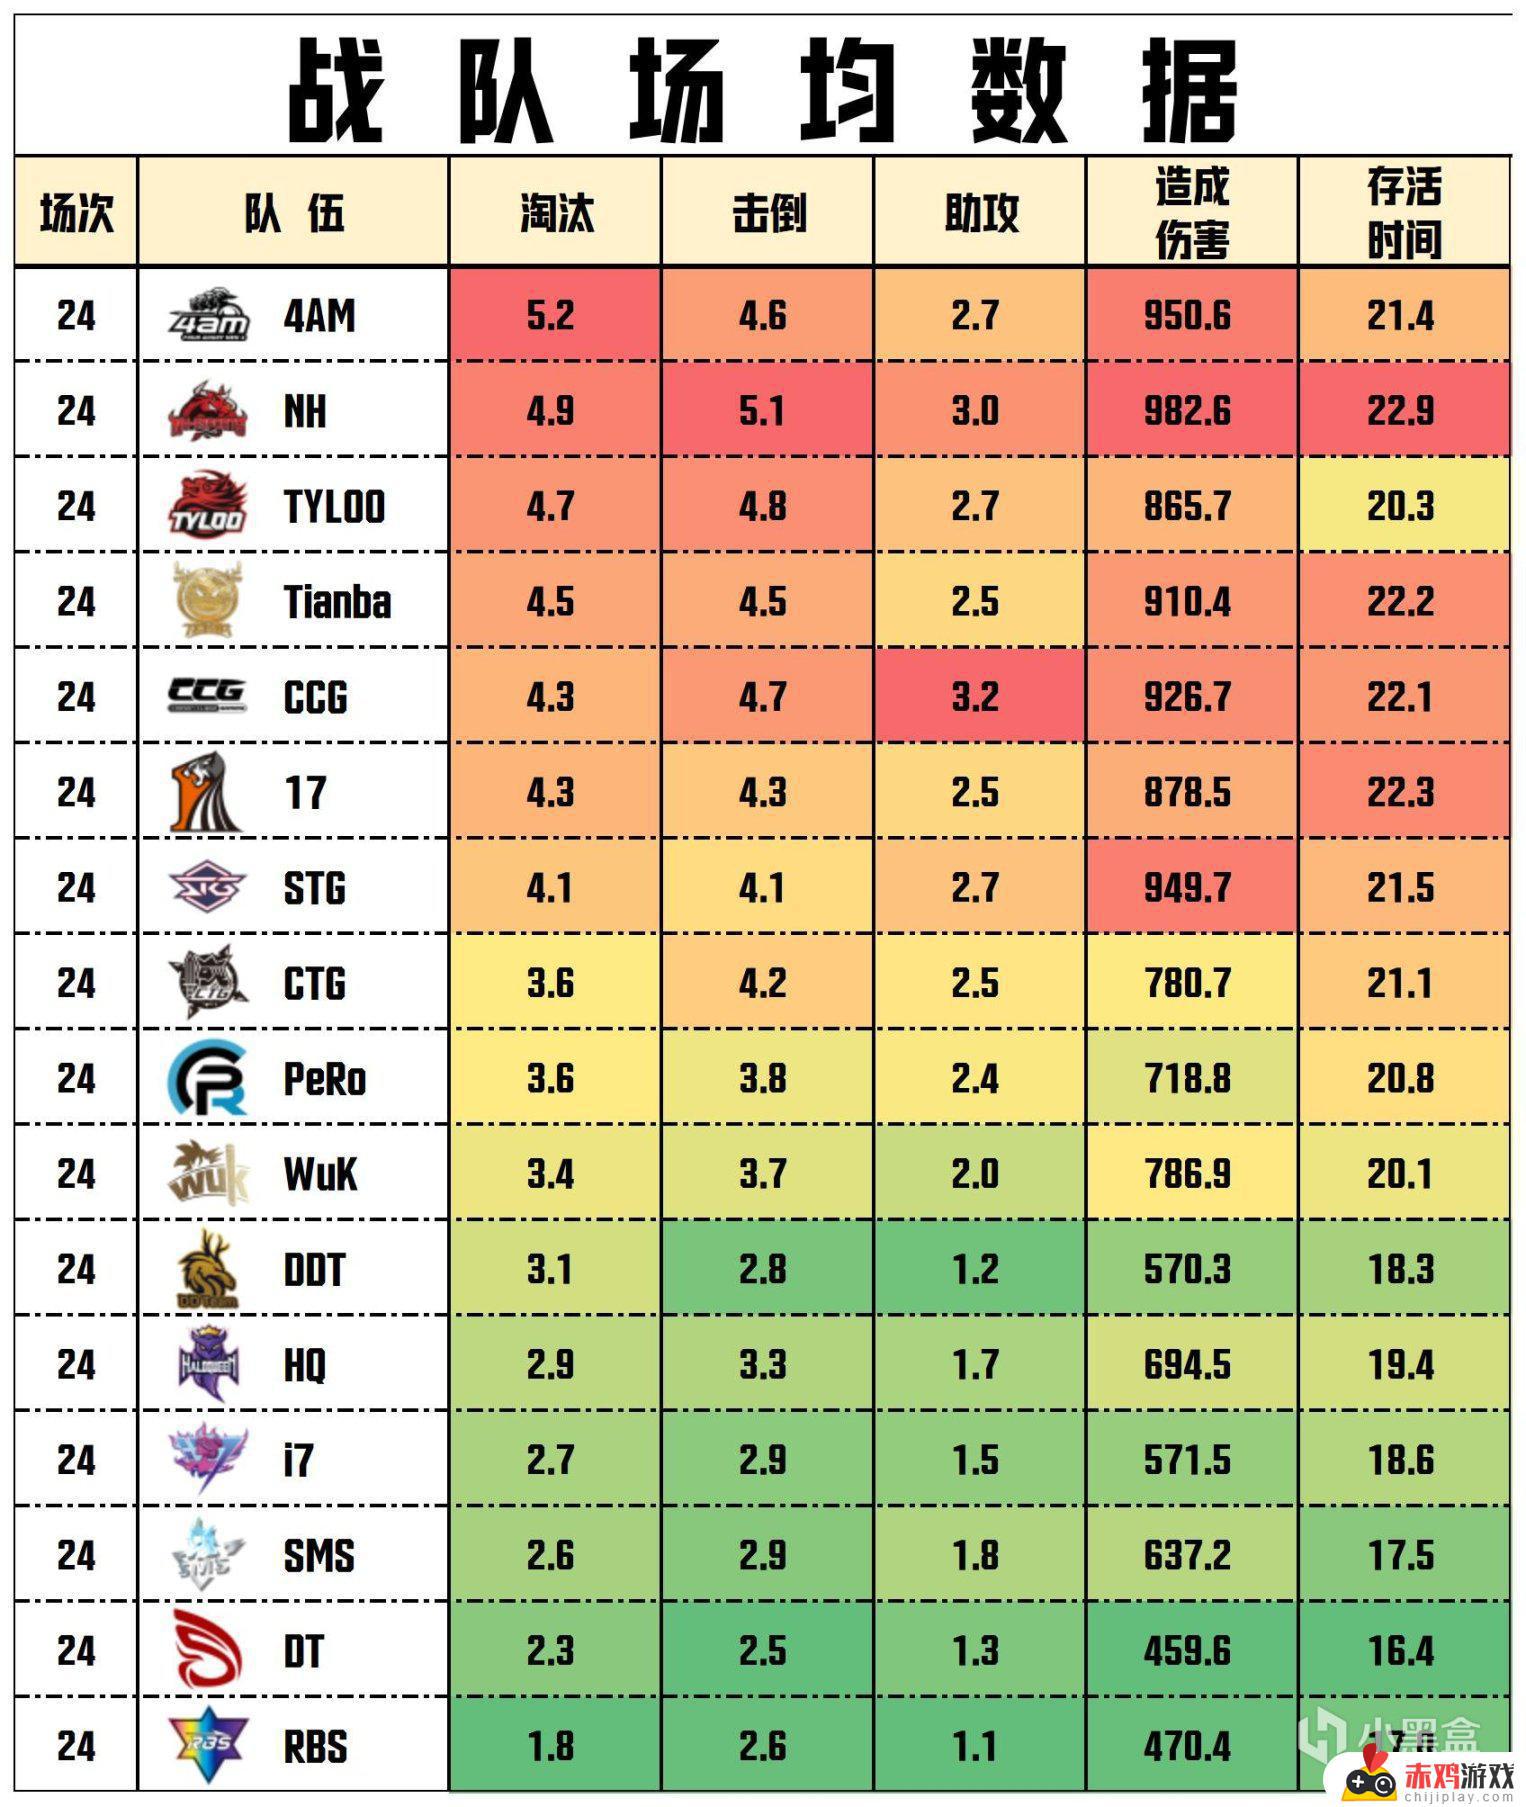 【数据流】PCL季后赛D4/5,NH 229分回到榜首,CRAZY112战神42杀